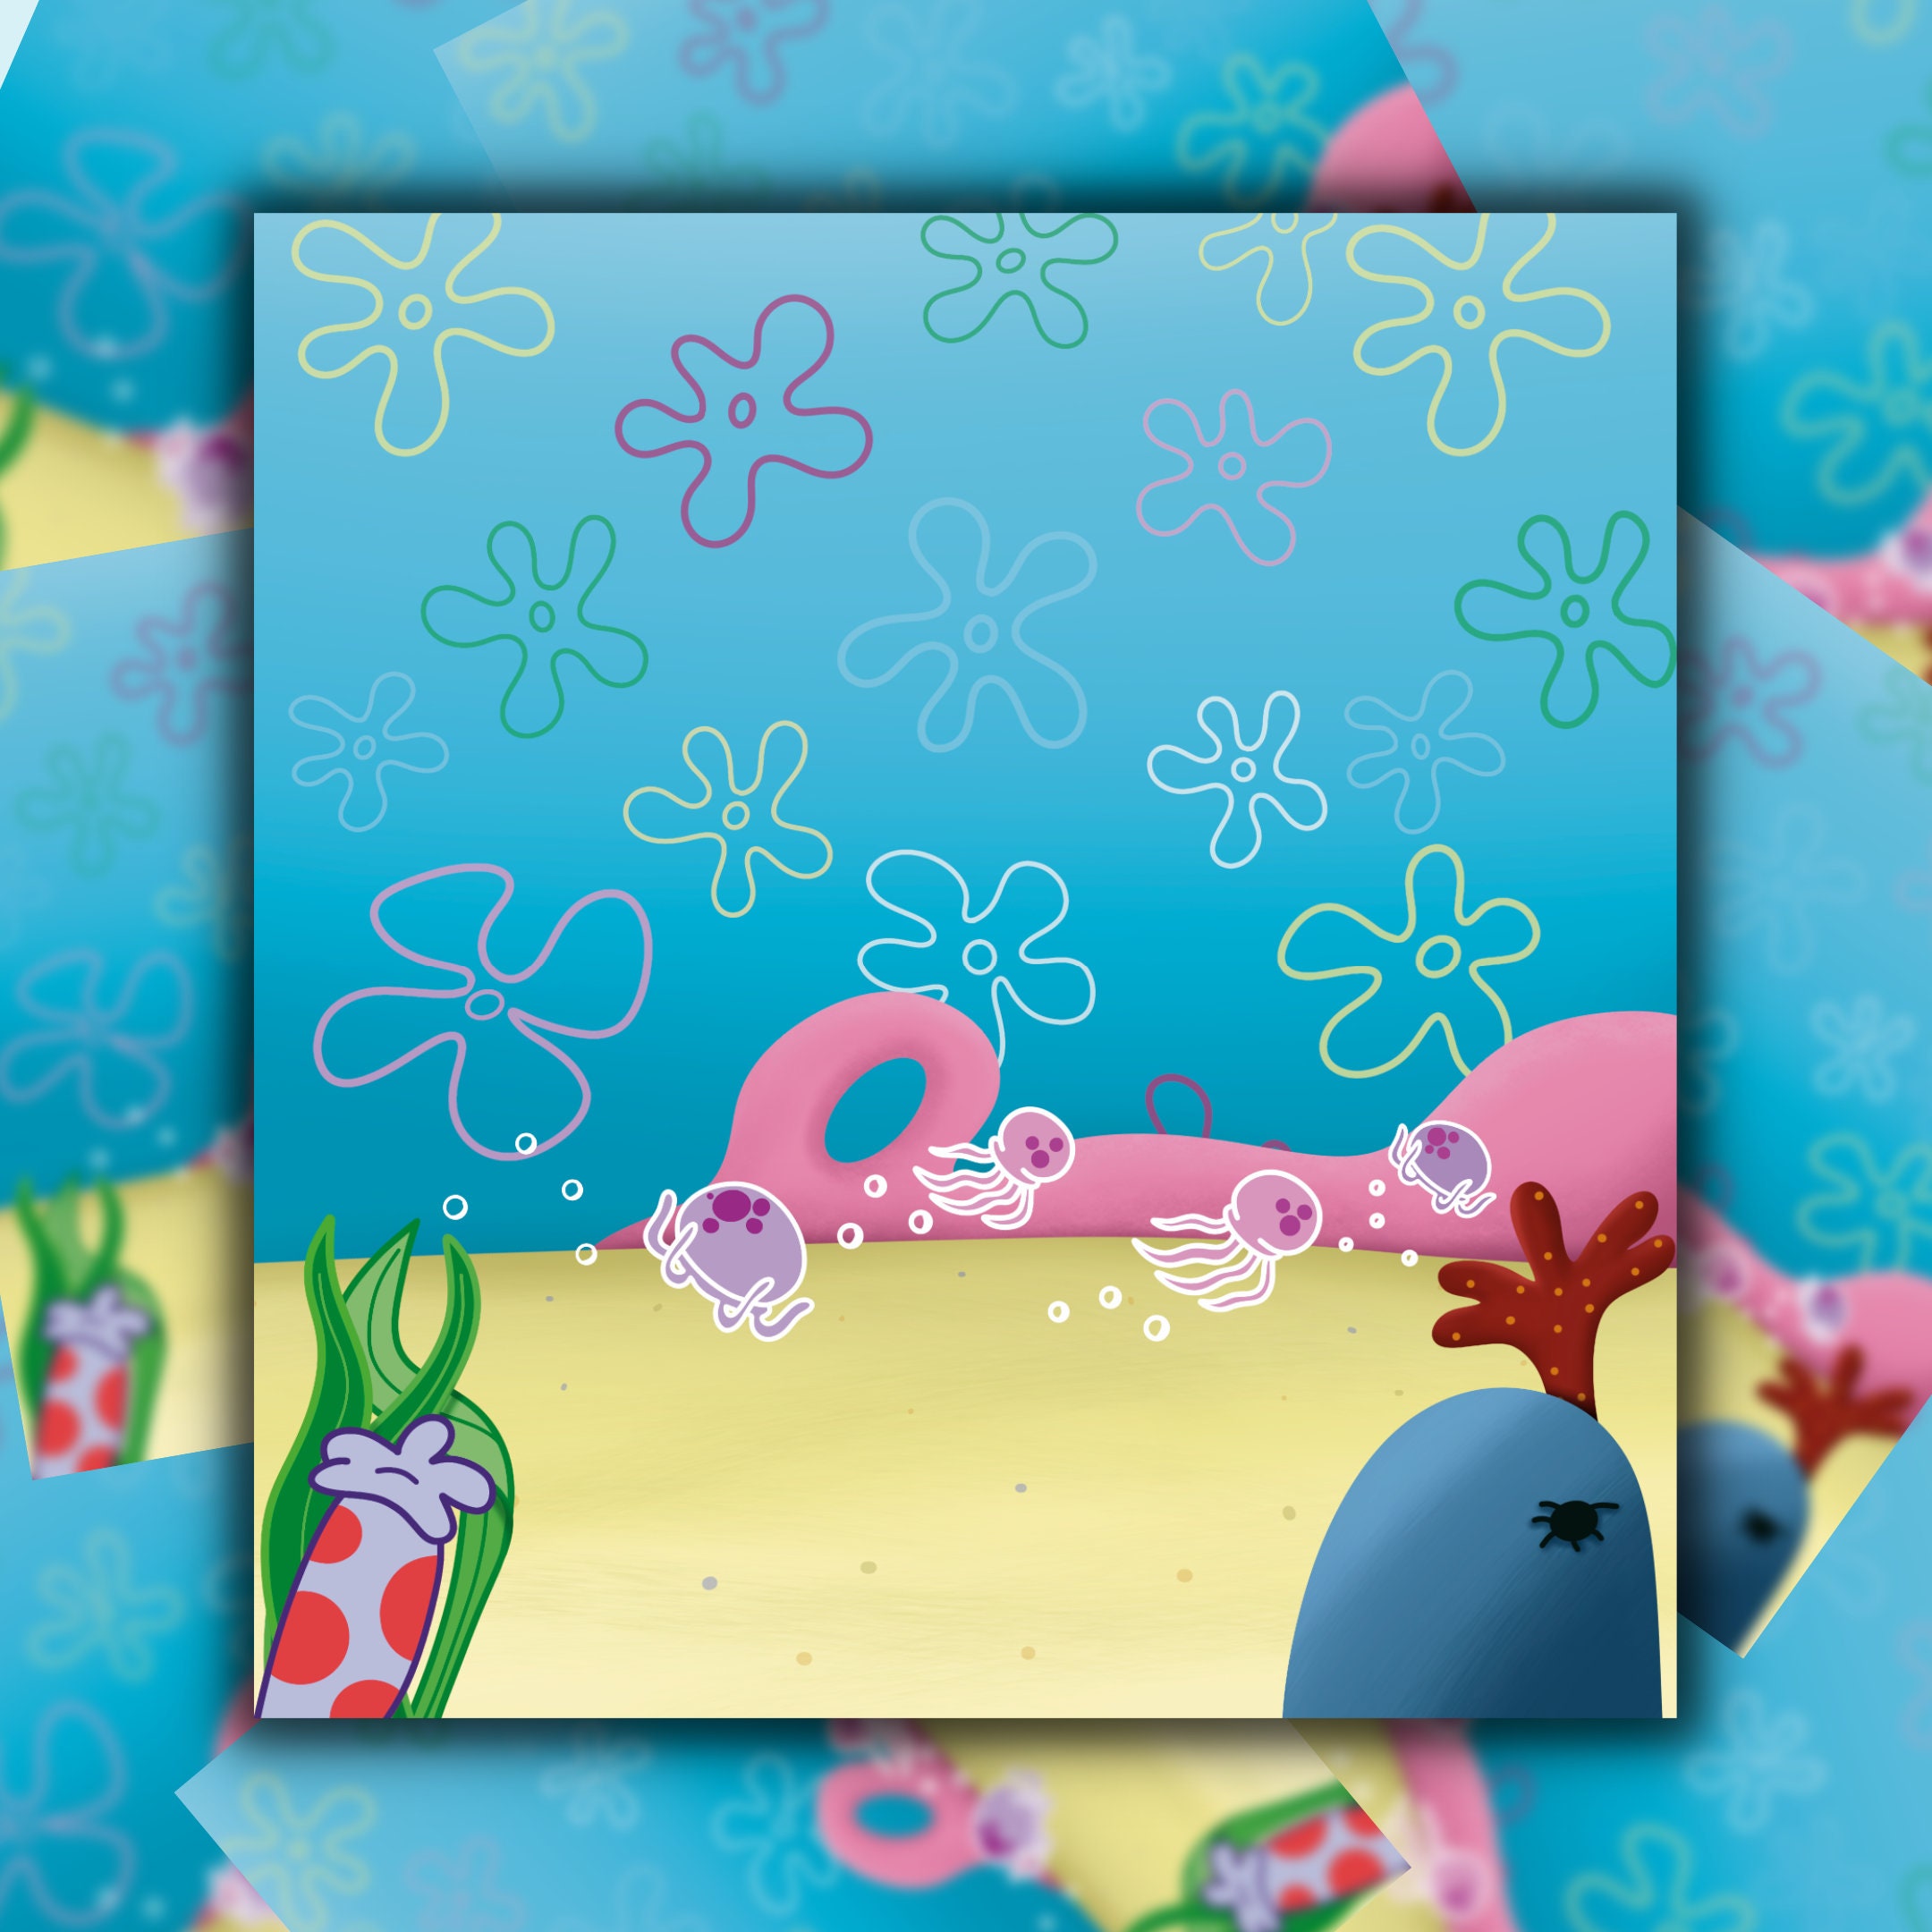 Funny Spongebob Squarepants iPhone Wallpapers Free Download